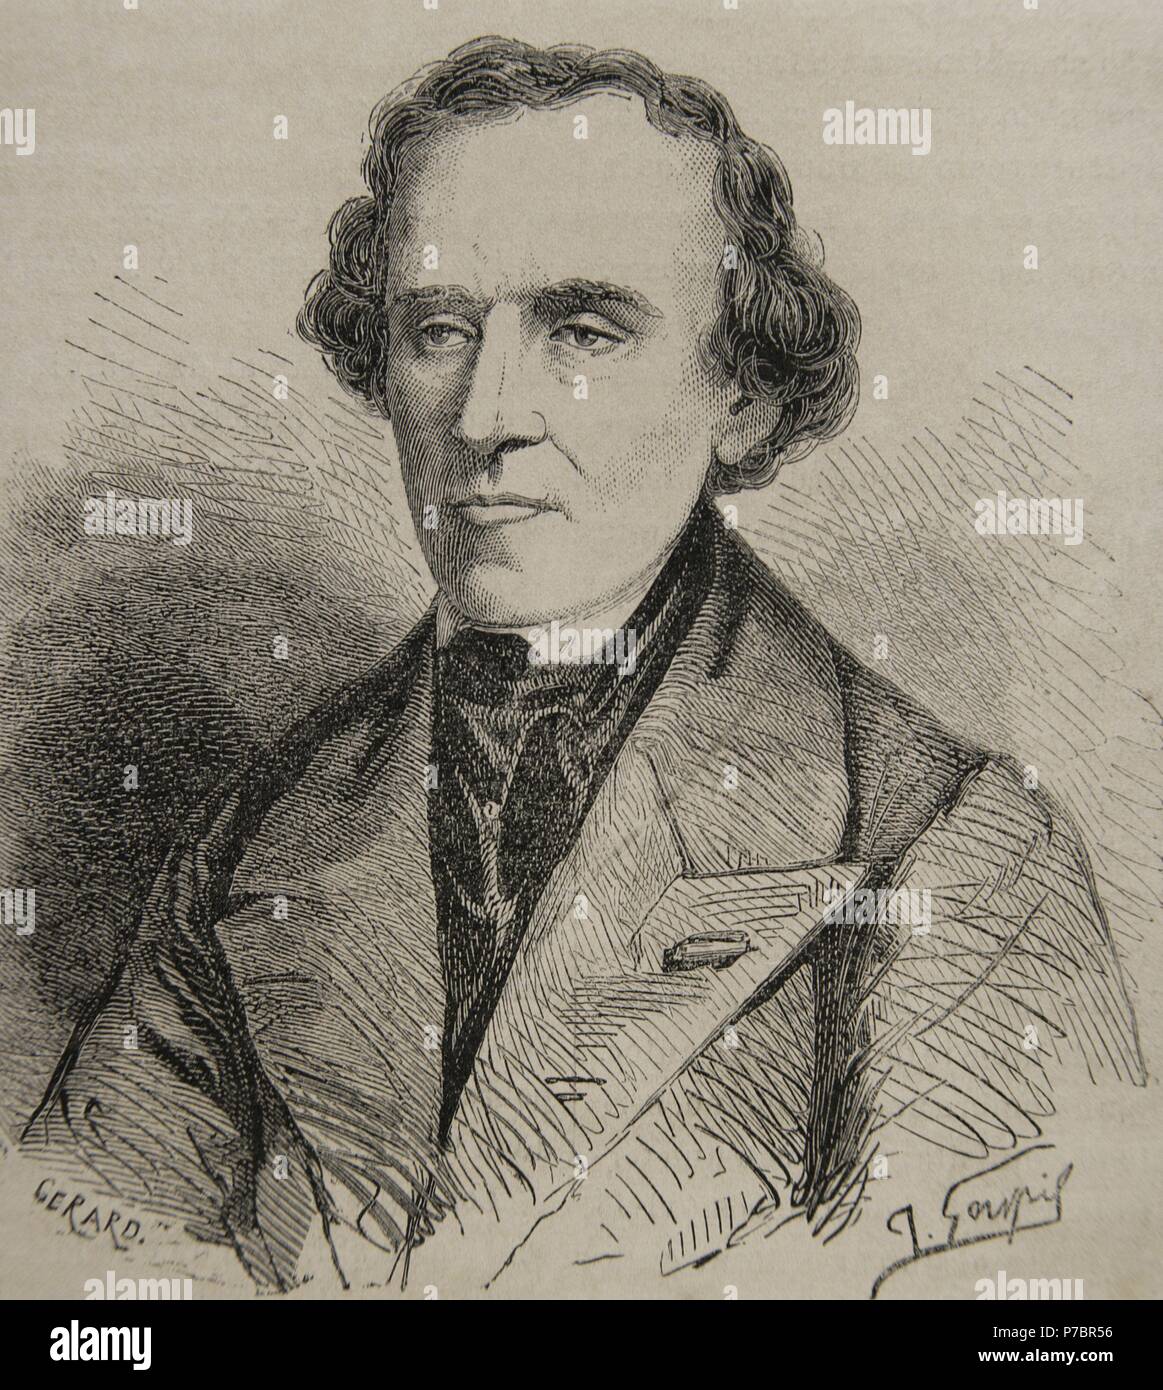 Giacomo Meyerbeer (1791-1864). Opera tedesca compositore. Ritratto. Incisione di Gerard. Xix secolo. Foto Stock